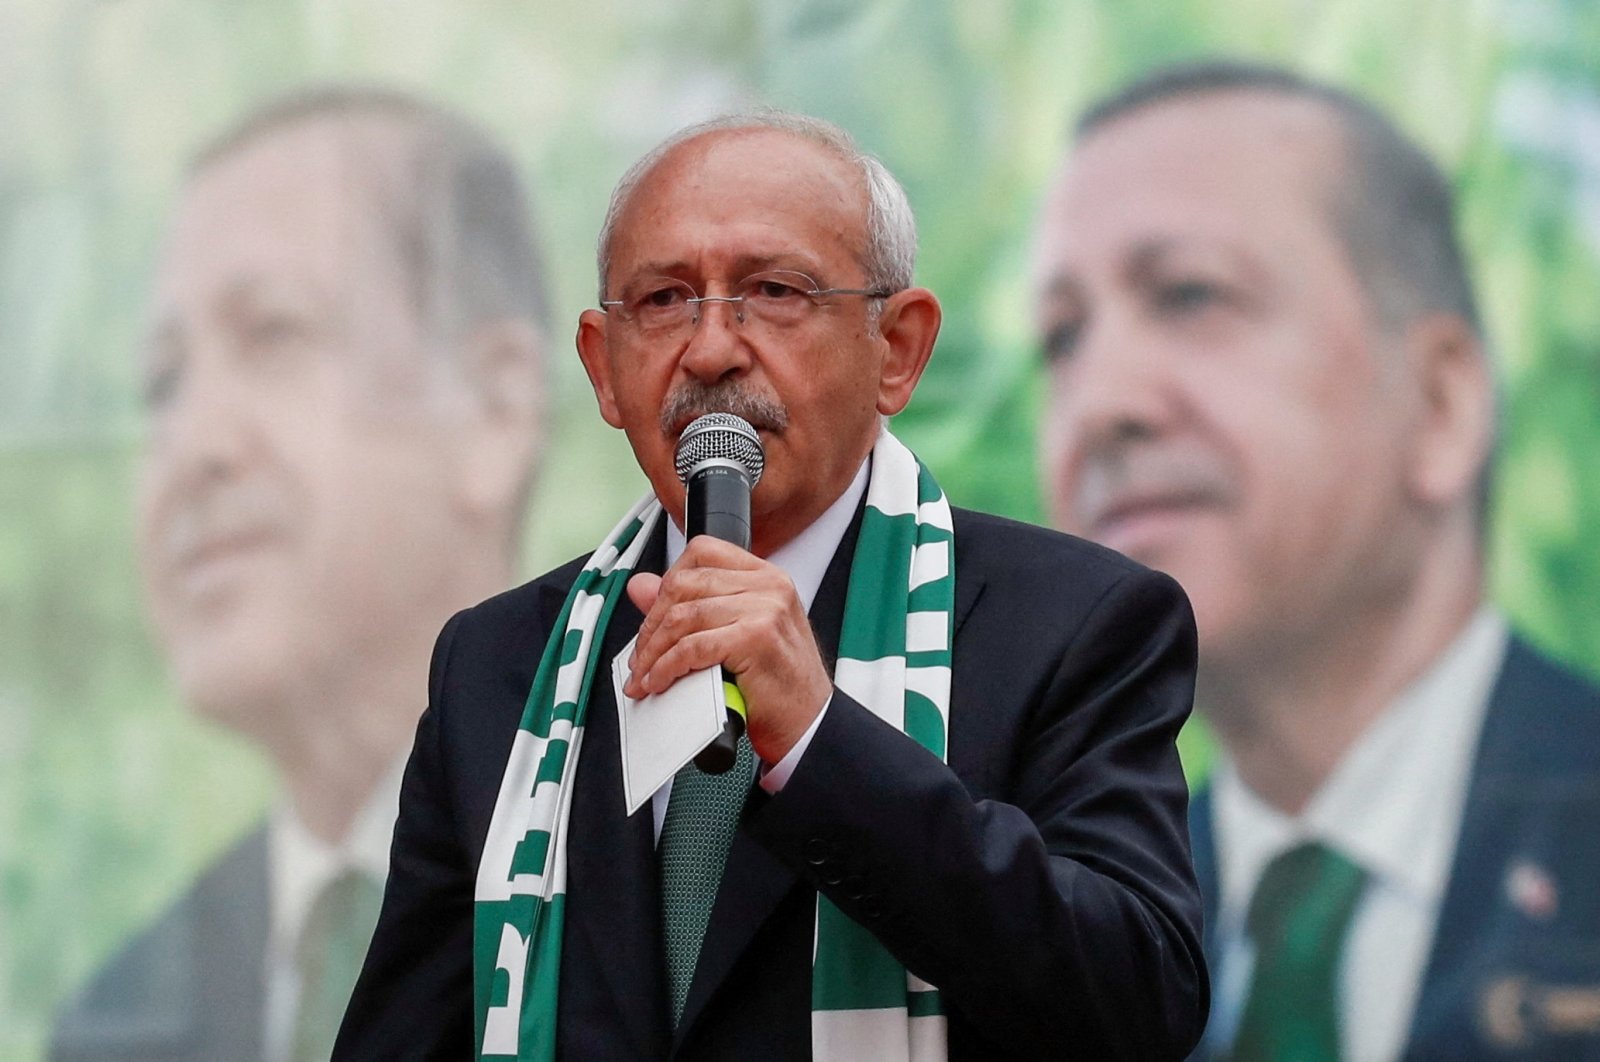 Kemal Kılıçdaroğlu speaks at an election rally, in Bursa, northwestern Türkiye, May 11, 2023. (Reuters Photo)